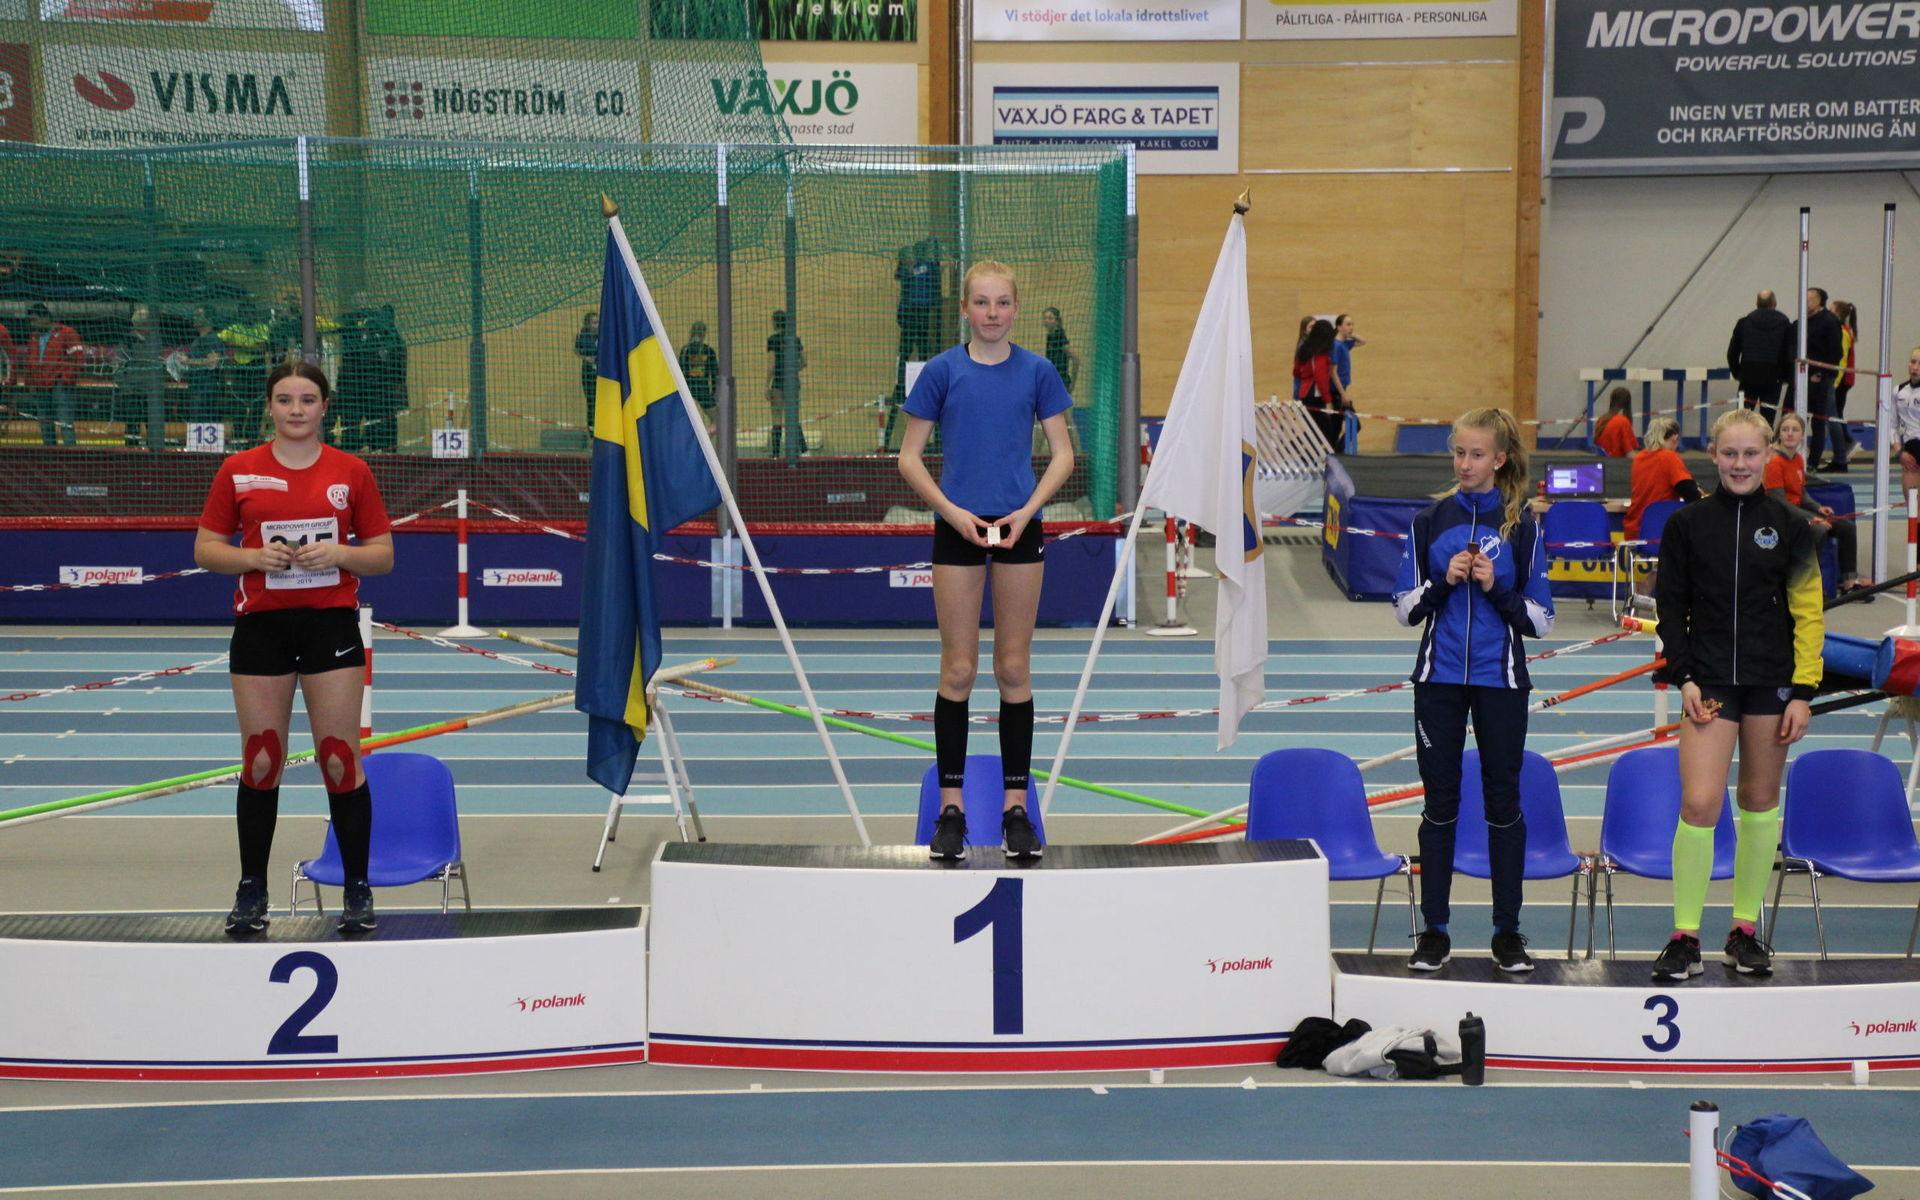 Götalandsmästaren Linnea Hallsten, Dals Södra FFI, andraplats Maja Johansson Scharnell, Eslövs AI, delad tredjeplats Agnes Vinghamre, Brattås CK och Elin Björn, Bohus IF.